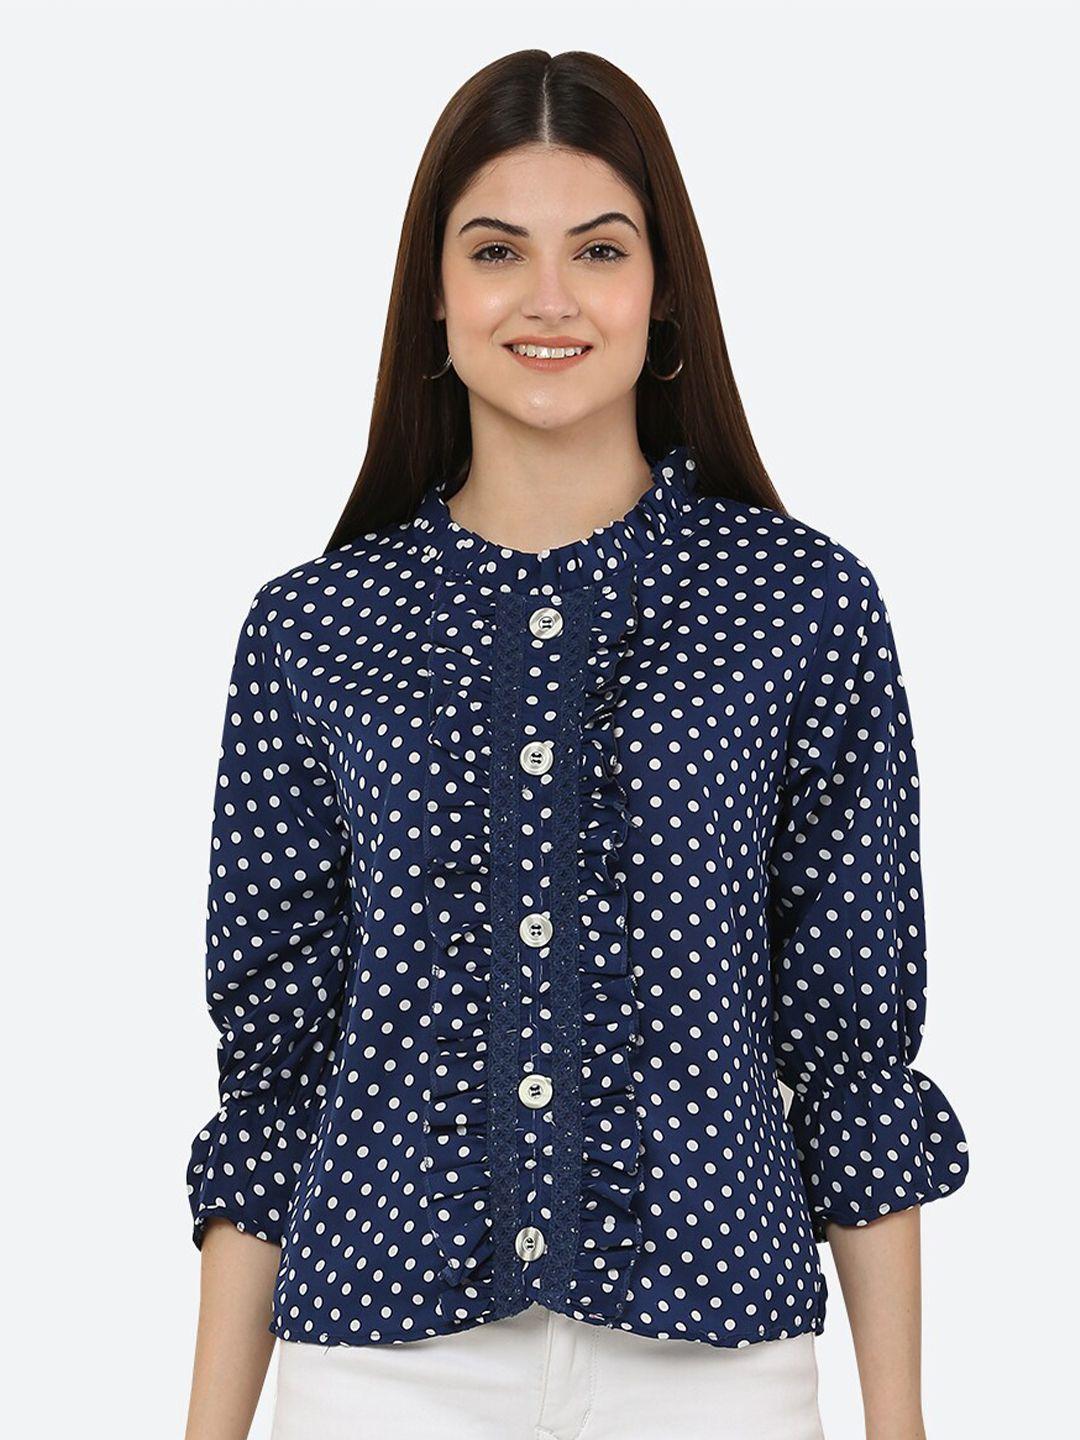 ashnaina blue mandarin collar shirt style top